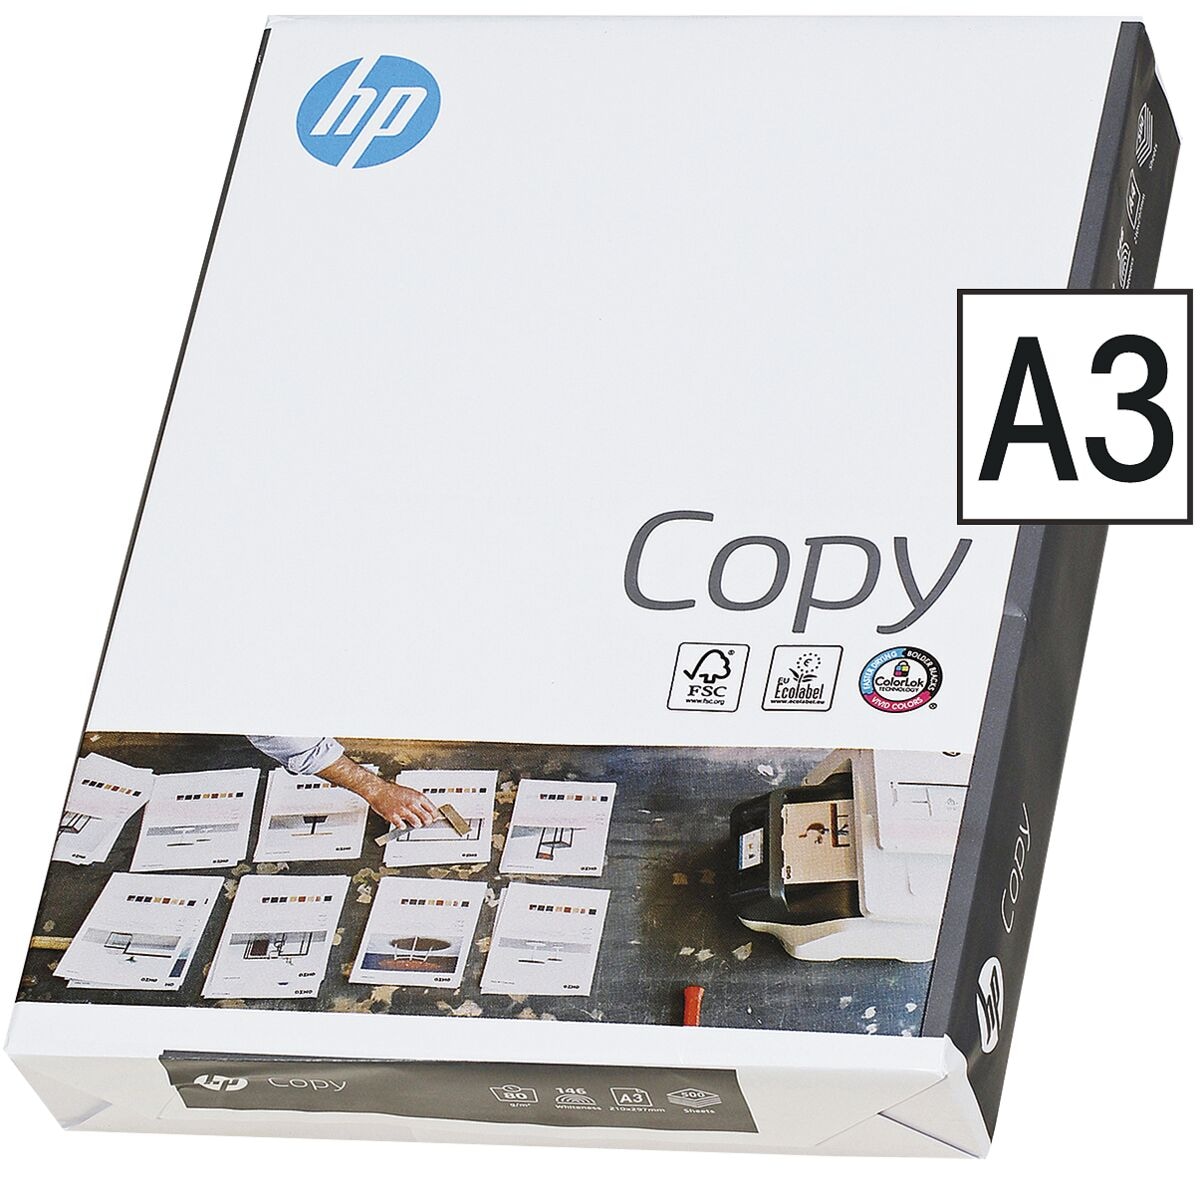 Kopierpapier A3 HP Copy - 500 Blatt gesamt, 80g/qm